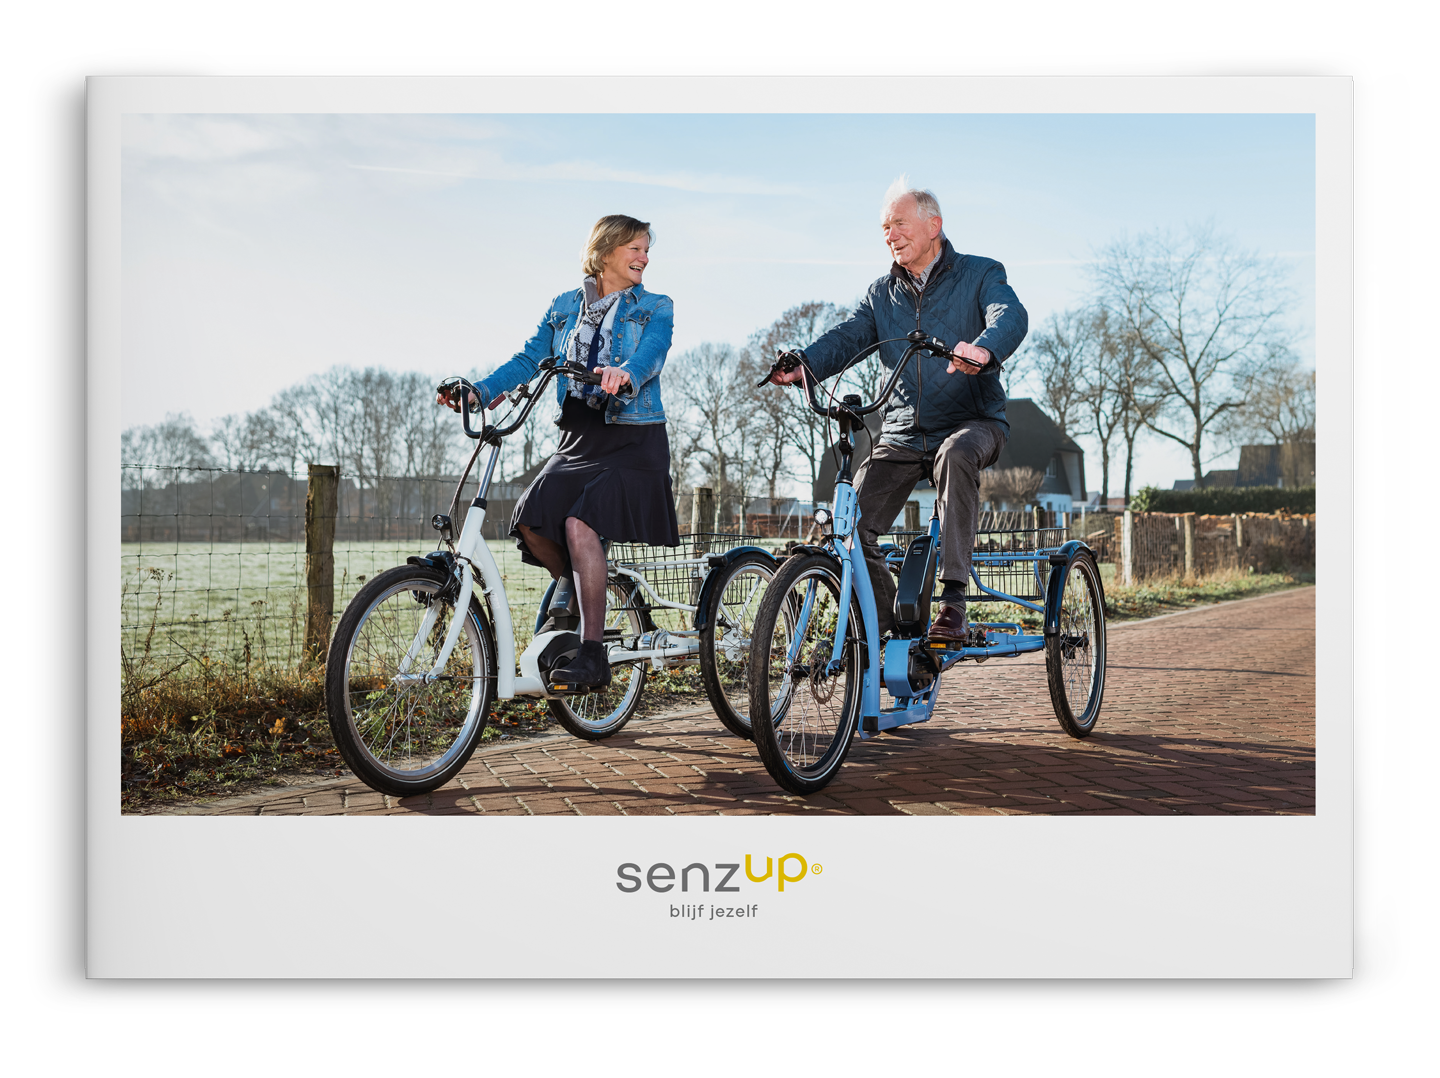 Cover van Senzup magazine met 2 mensen op een driewielfiets